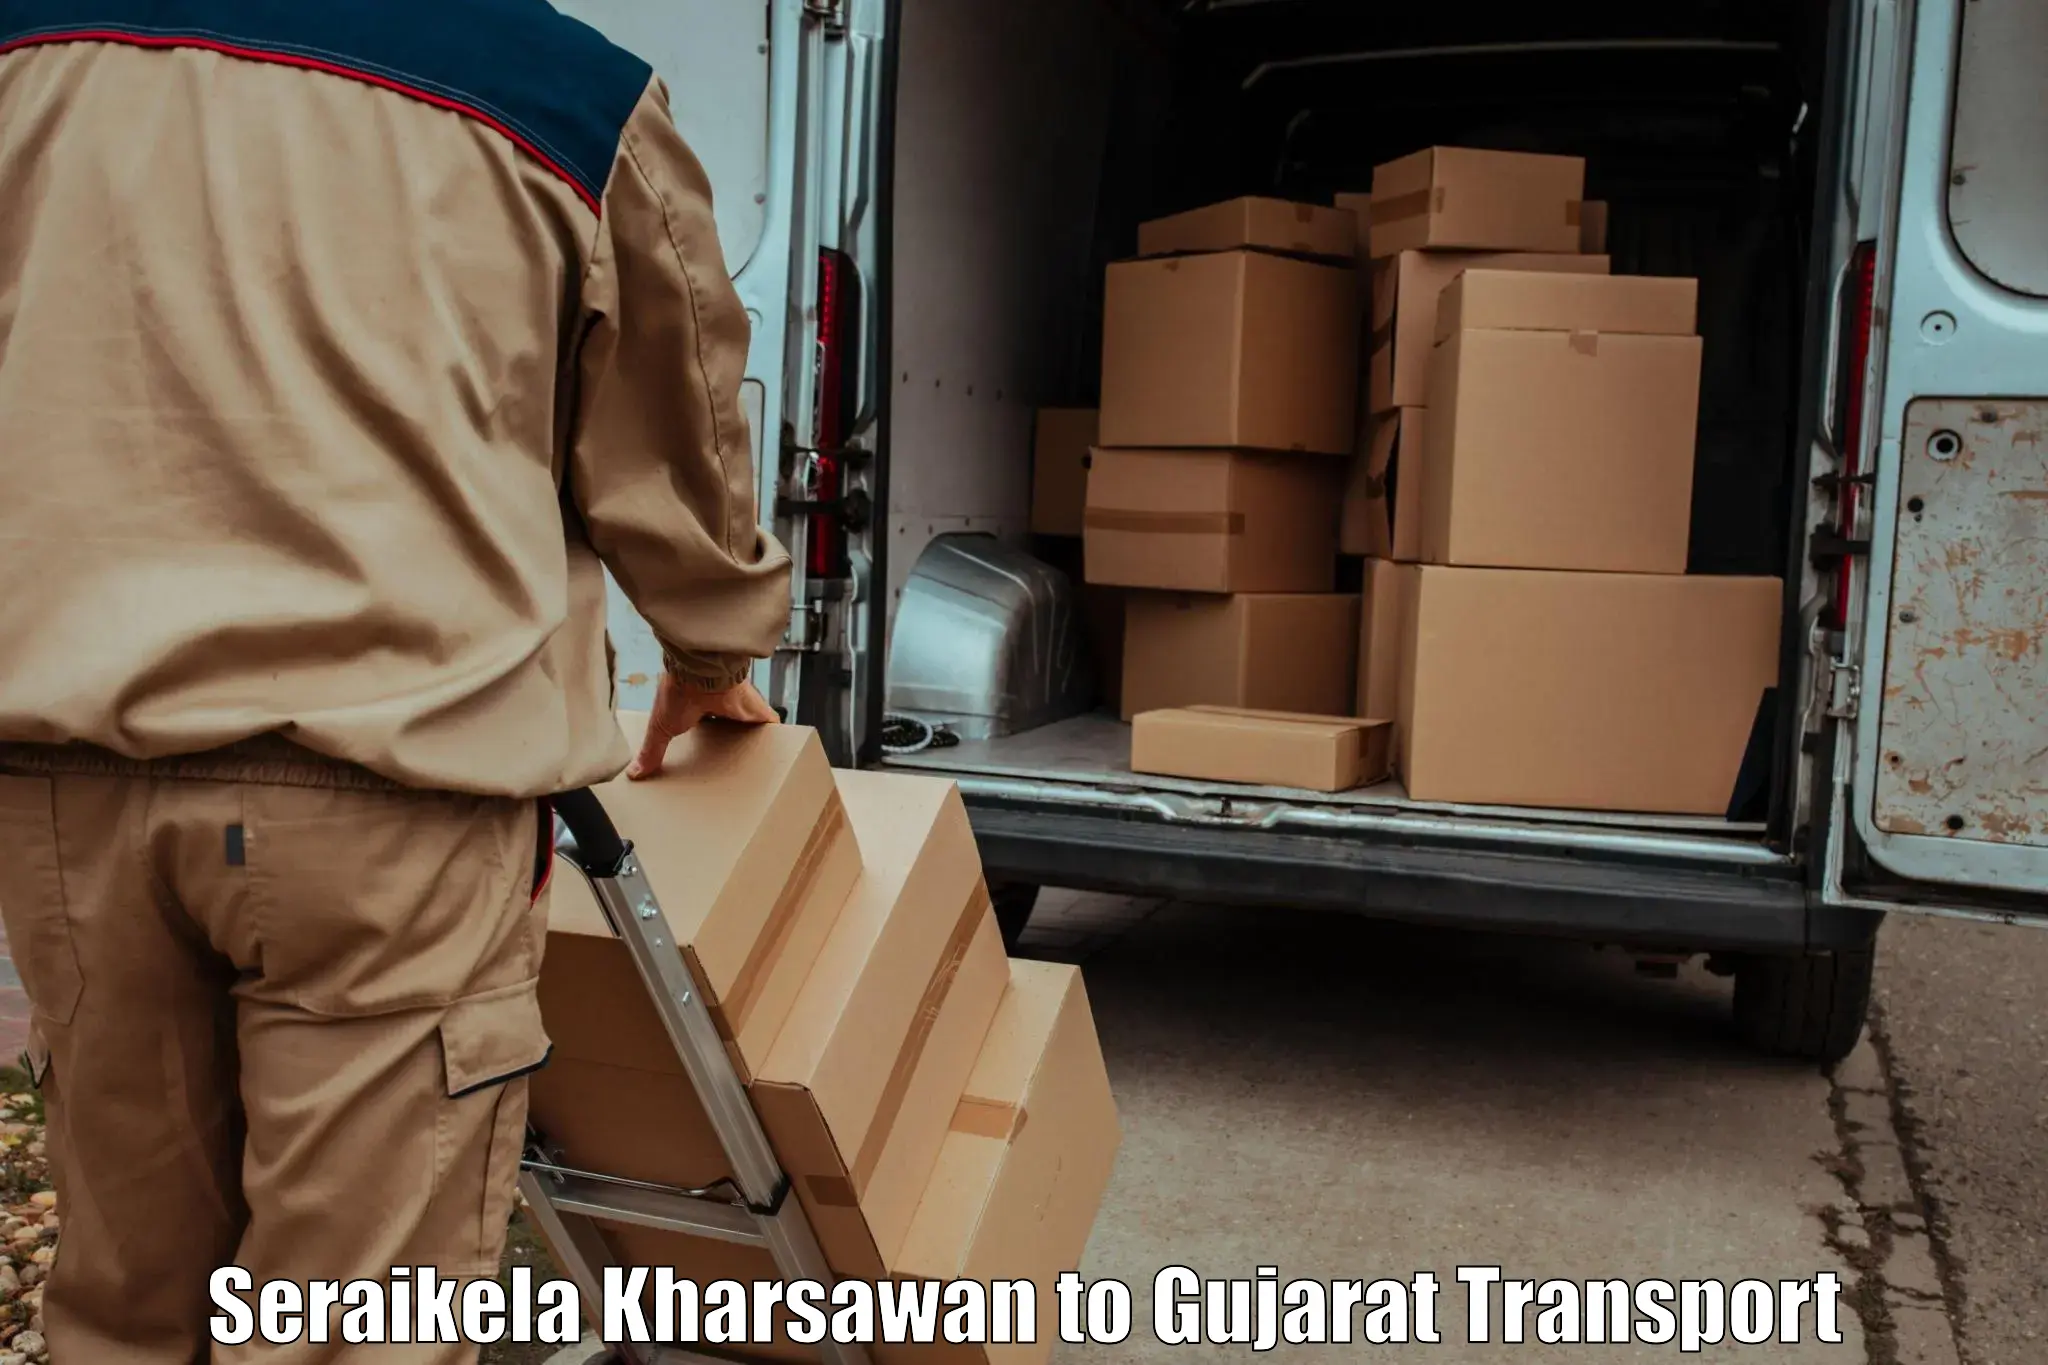 Sending bike to another city Seraikela Kharsawan to Gujarat